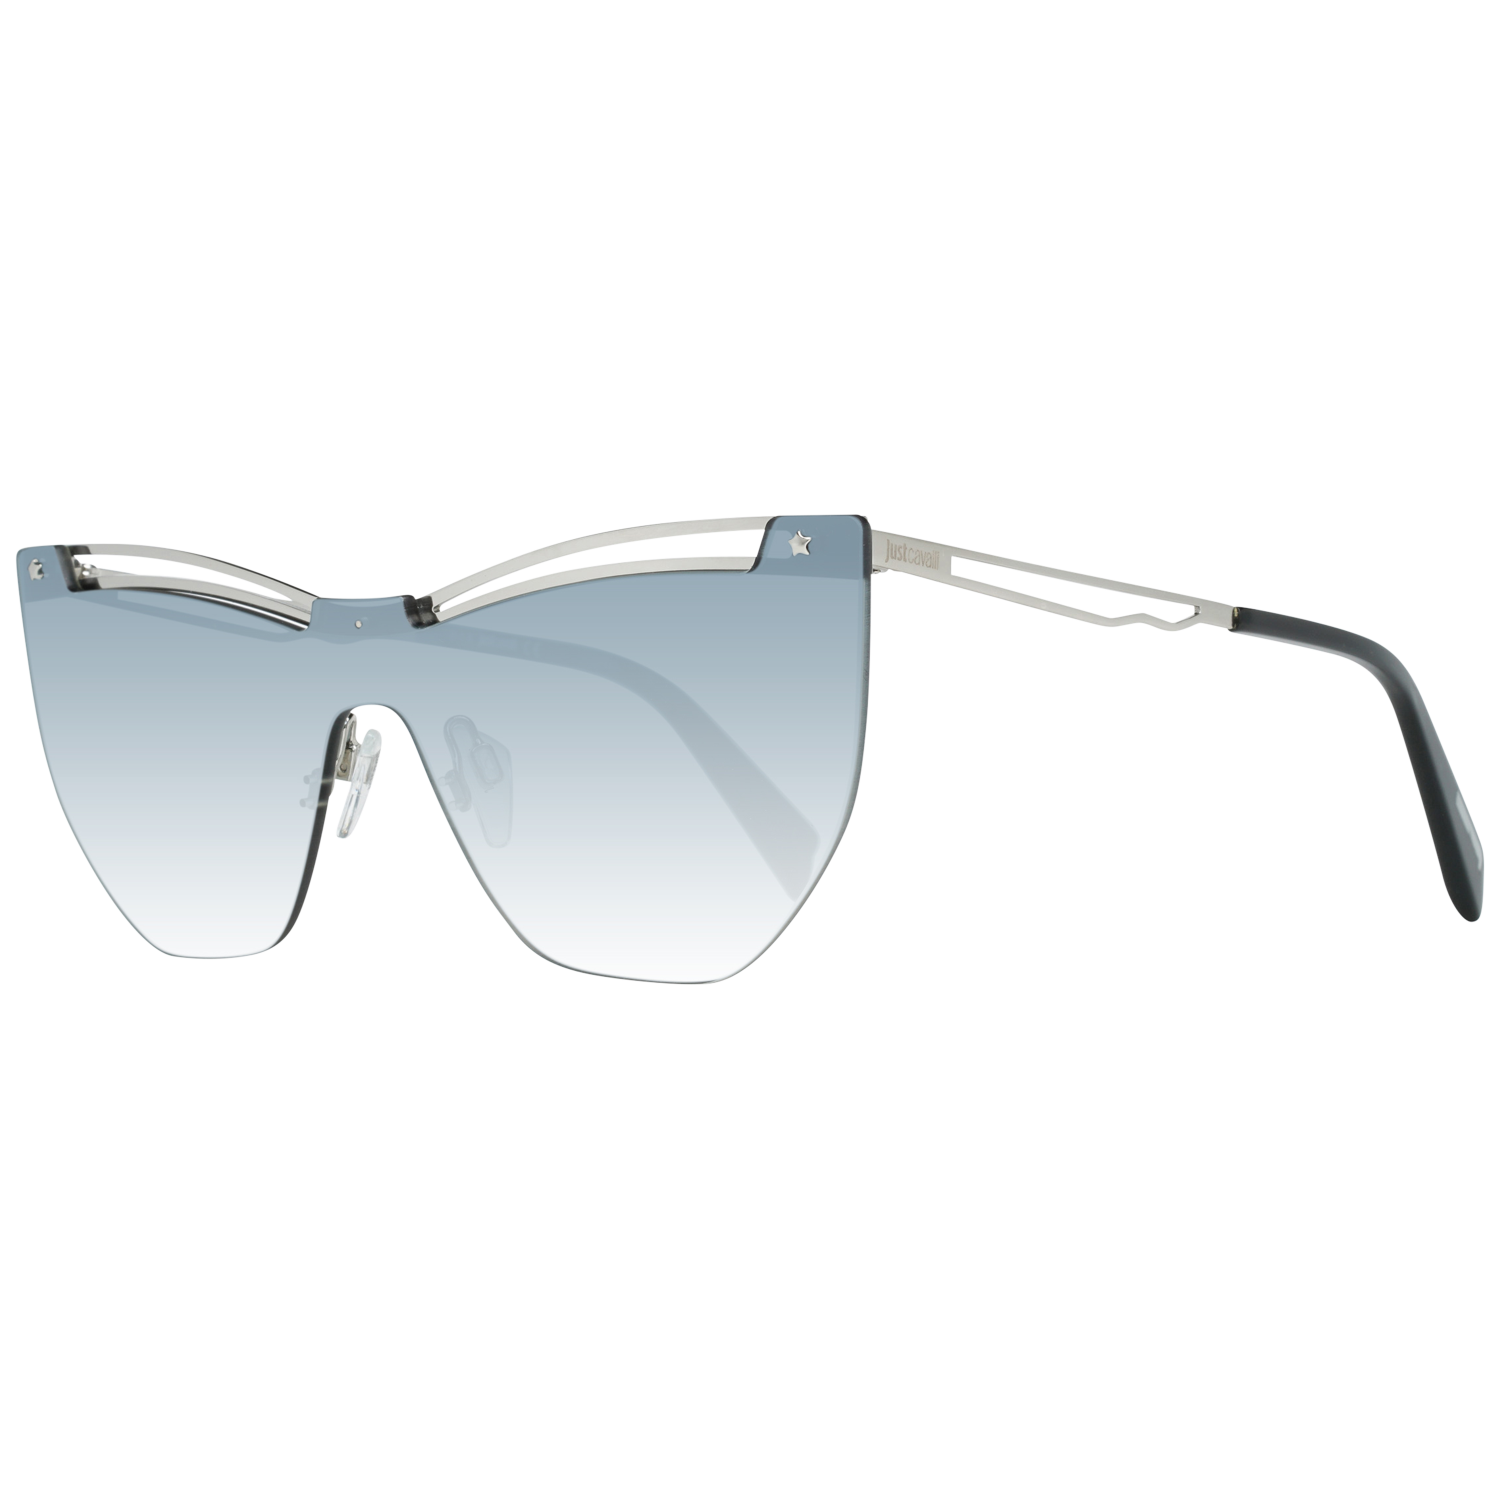 Just Cavalli Sunglasses Just Cavalli Sunglasses JC841S 16B 138 Eyeglasses Eyewear UK USA Australia 